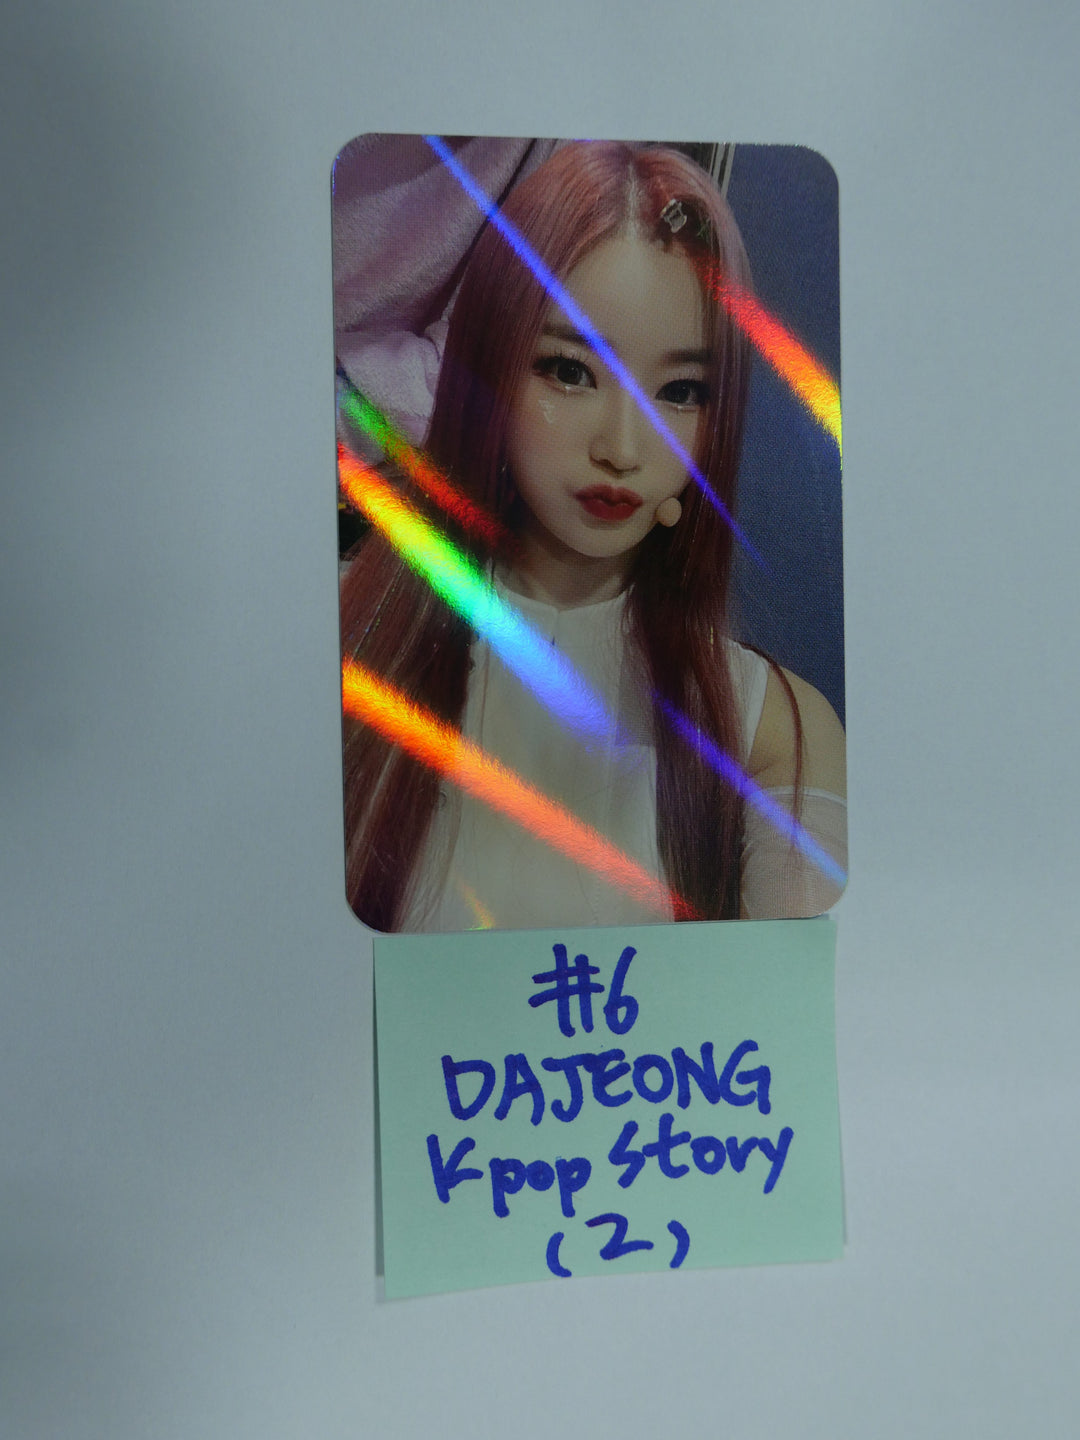 픽시 '요정의 숲 : 유혹' - Kpopstory 팬사인회 이벤트 홀로그램 포토카드